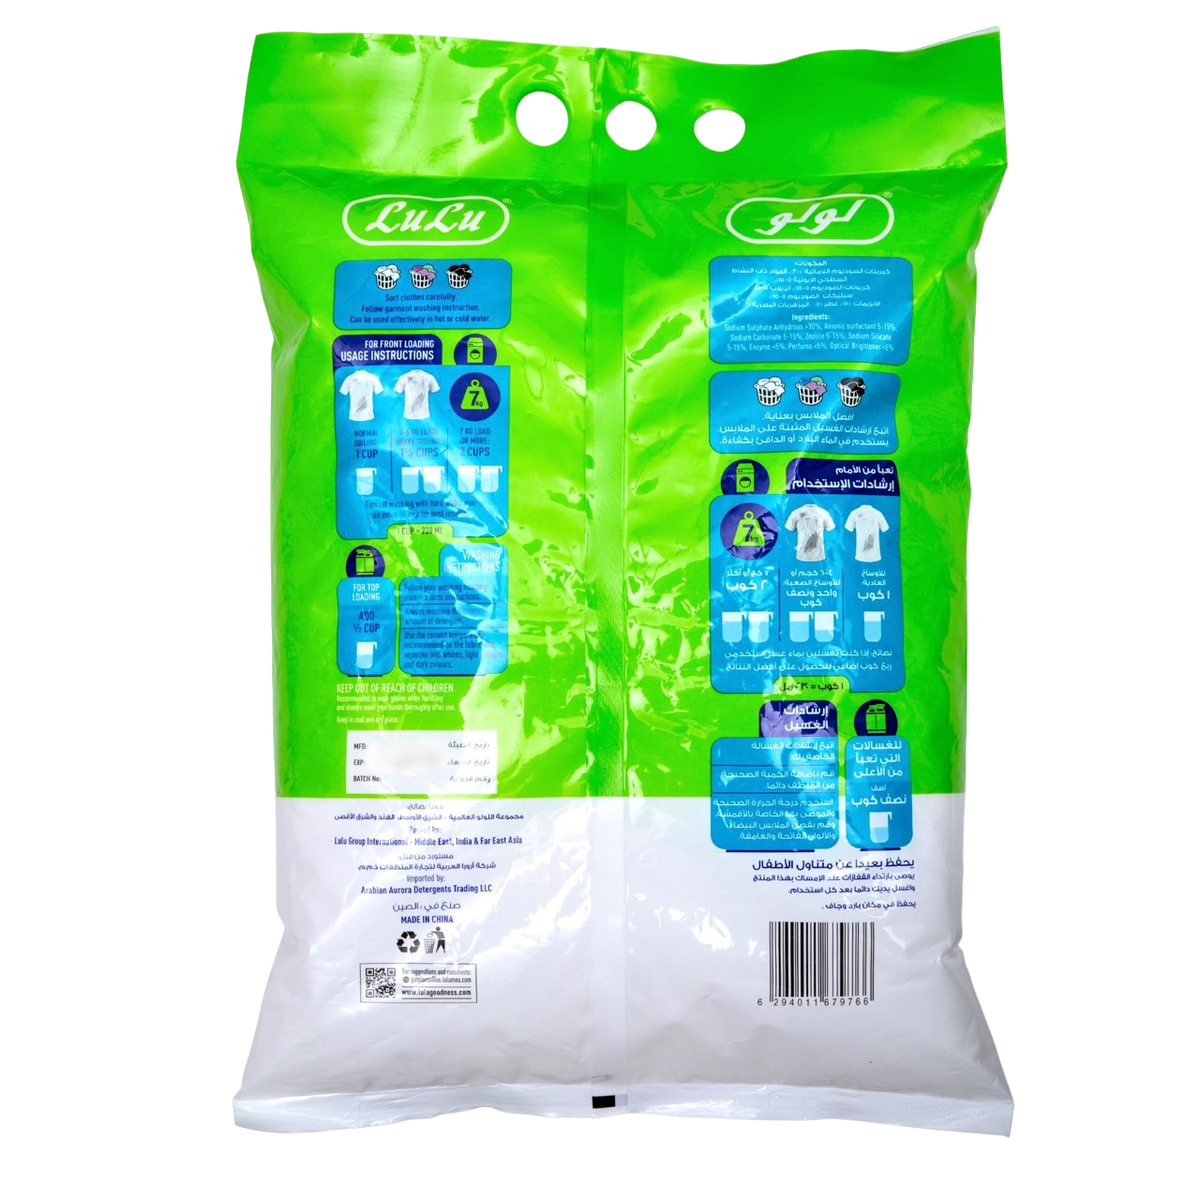 LuLu Wisepicks Lavander & Magnolia Detergent Powder 2.5 kg